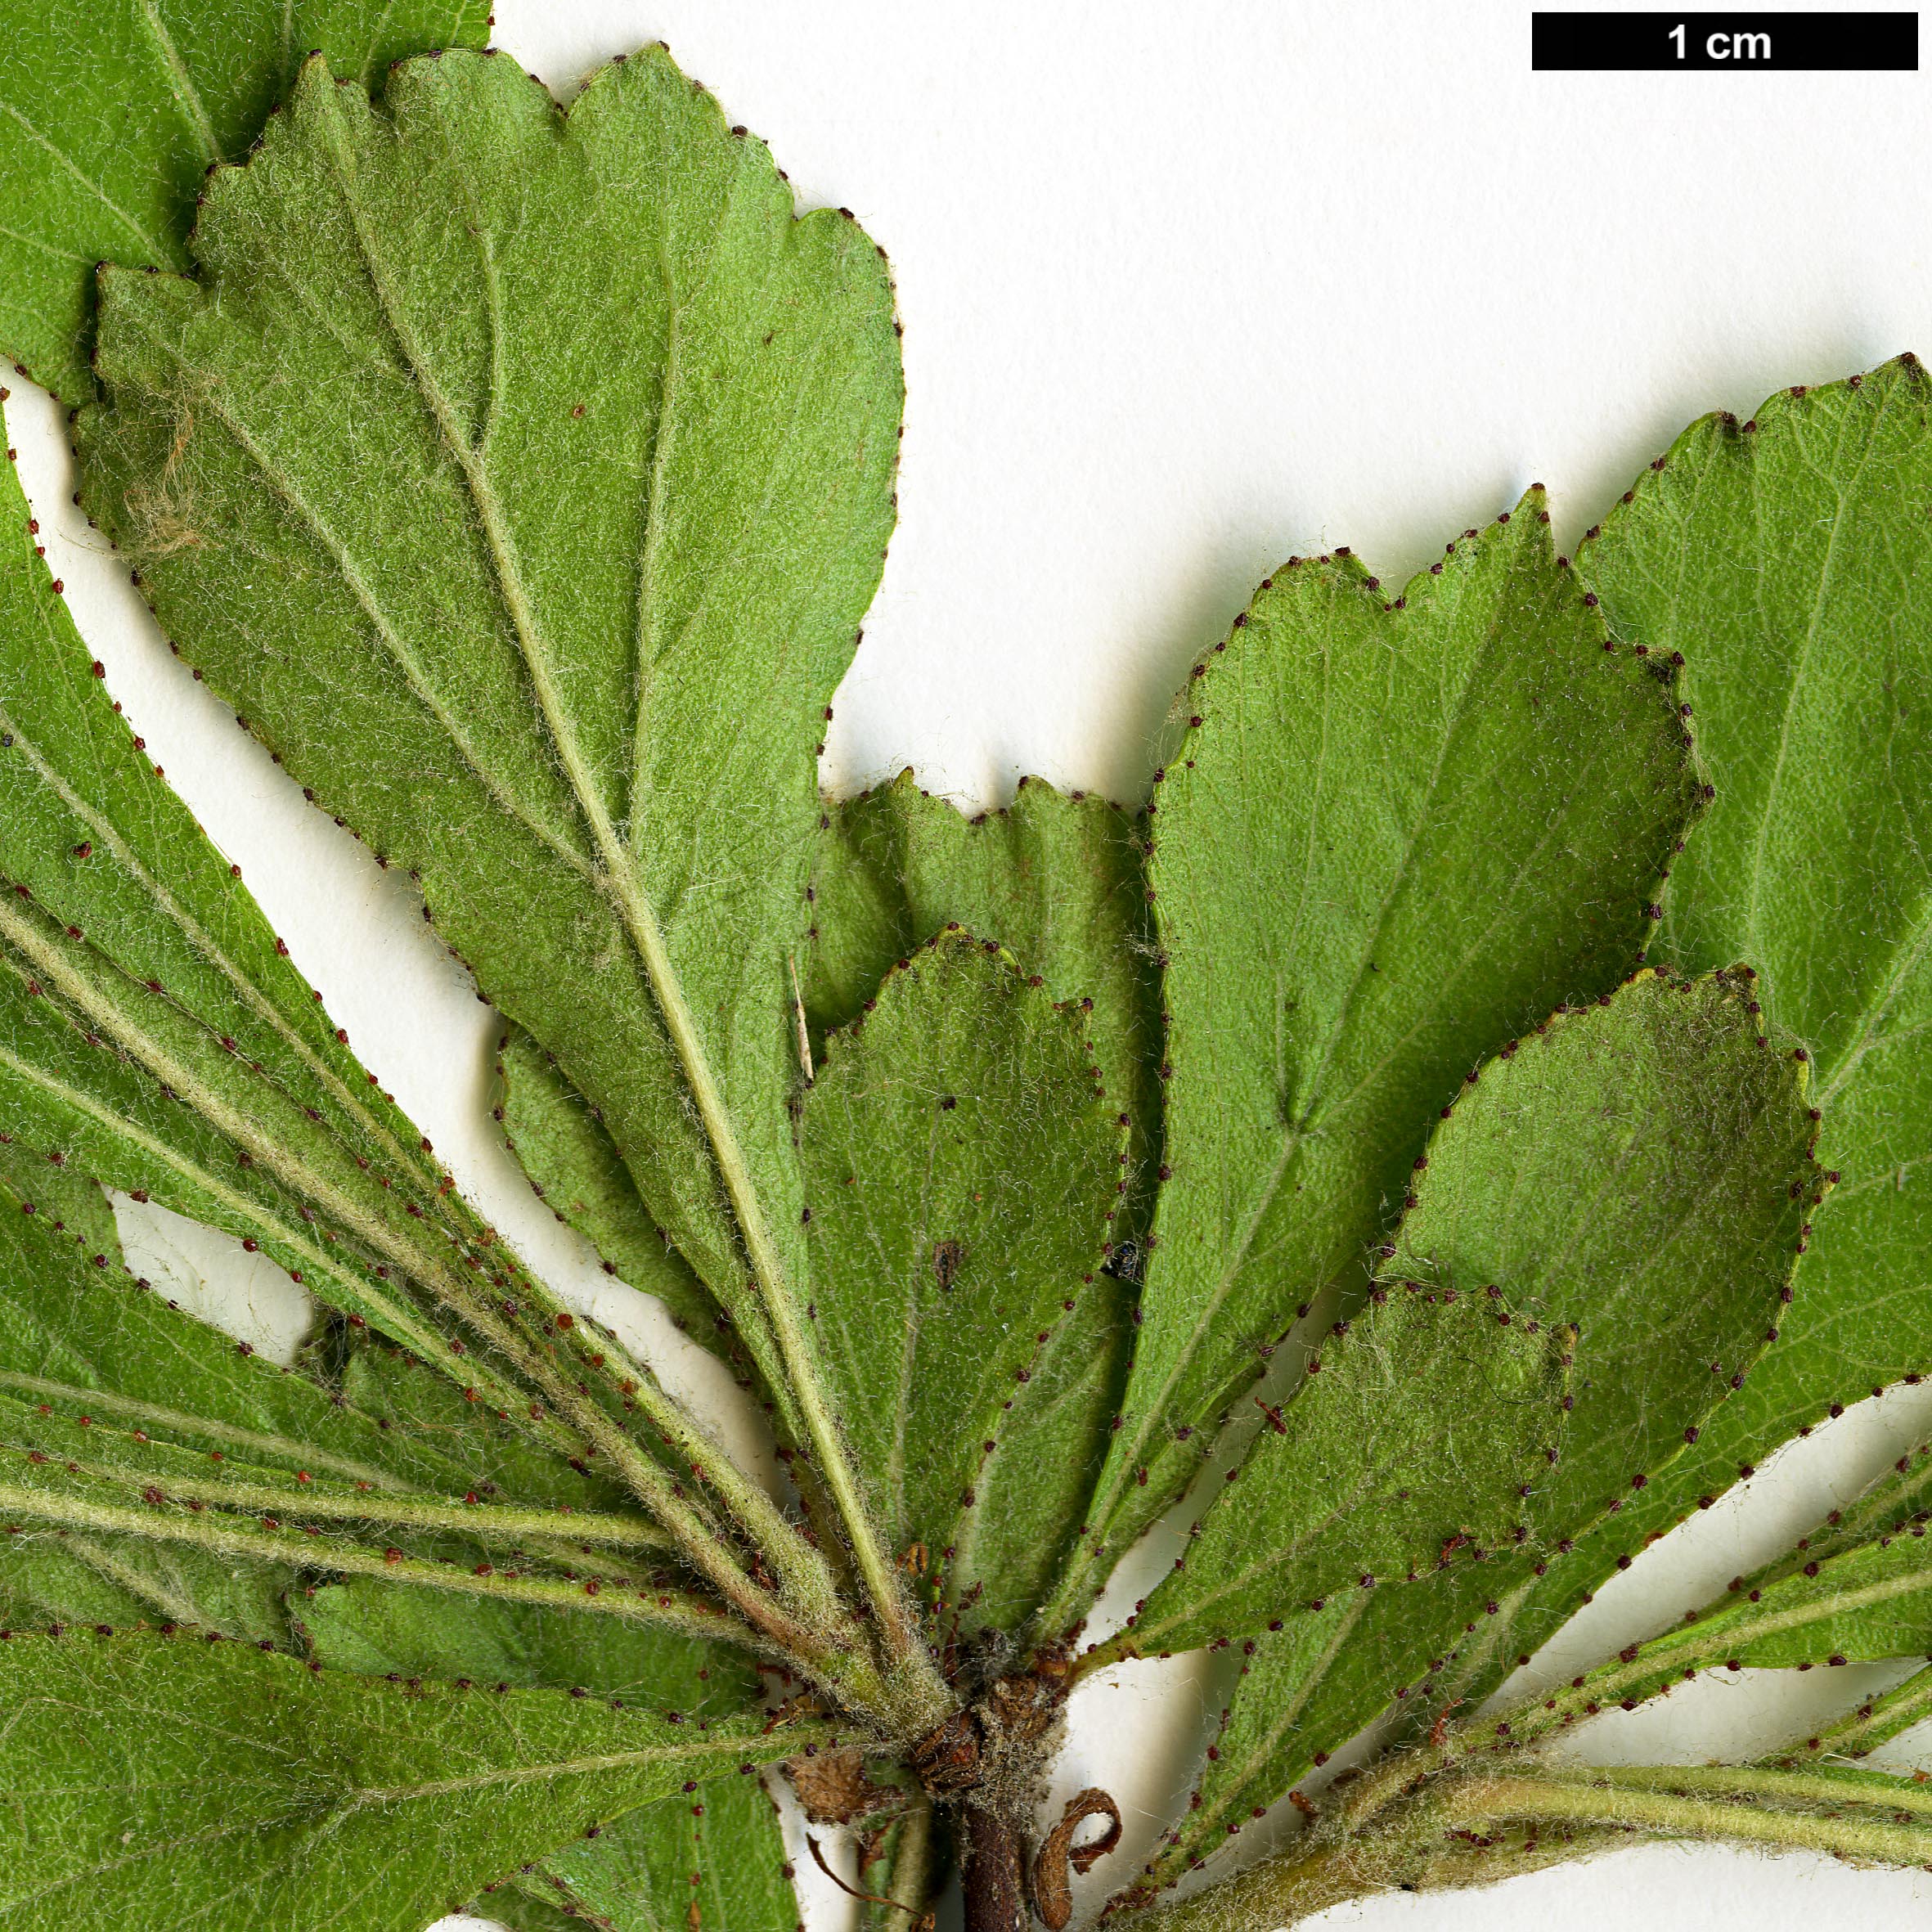 High resolution image: Family: Rosaceae - Genus: Crataegus - Taxon: lassa - SpeciesSub: var. colonica